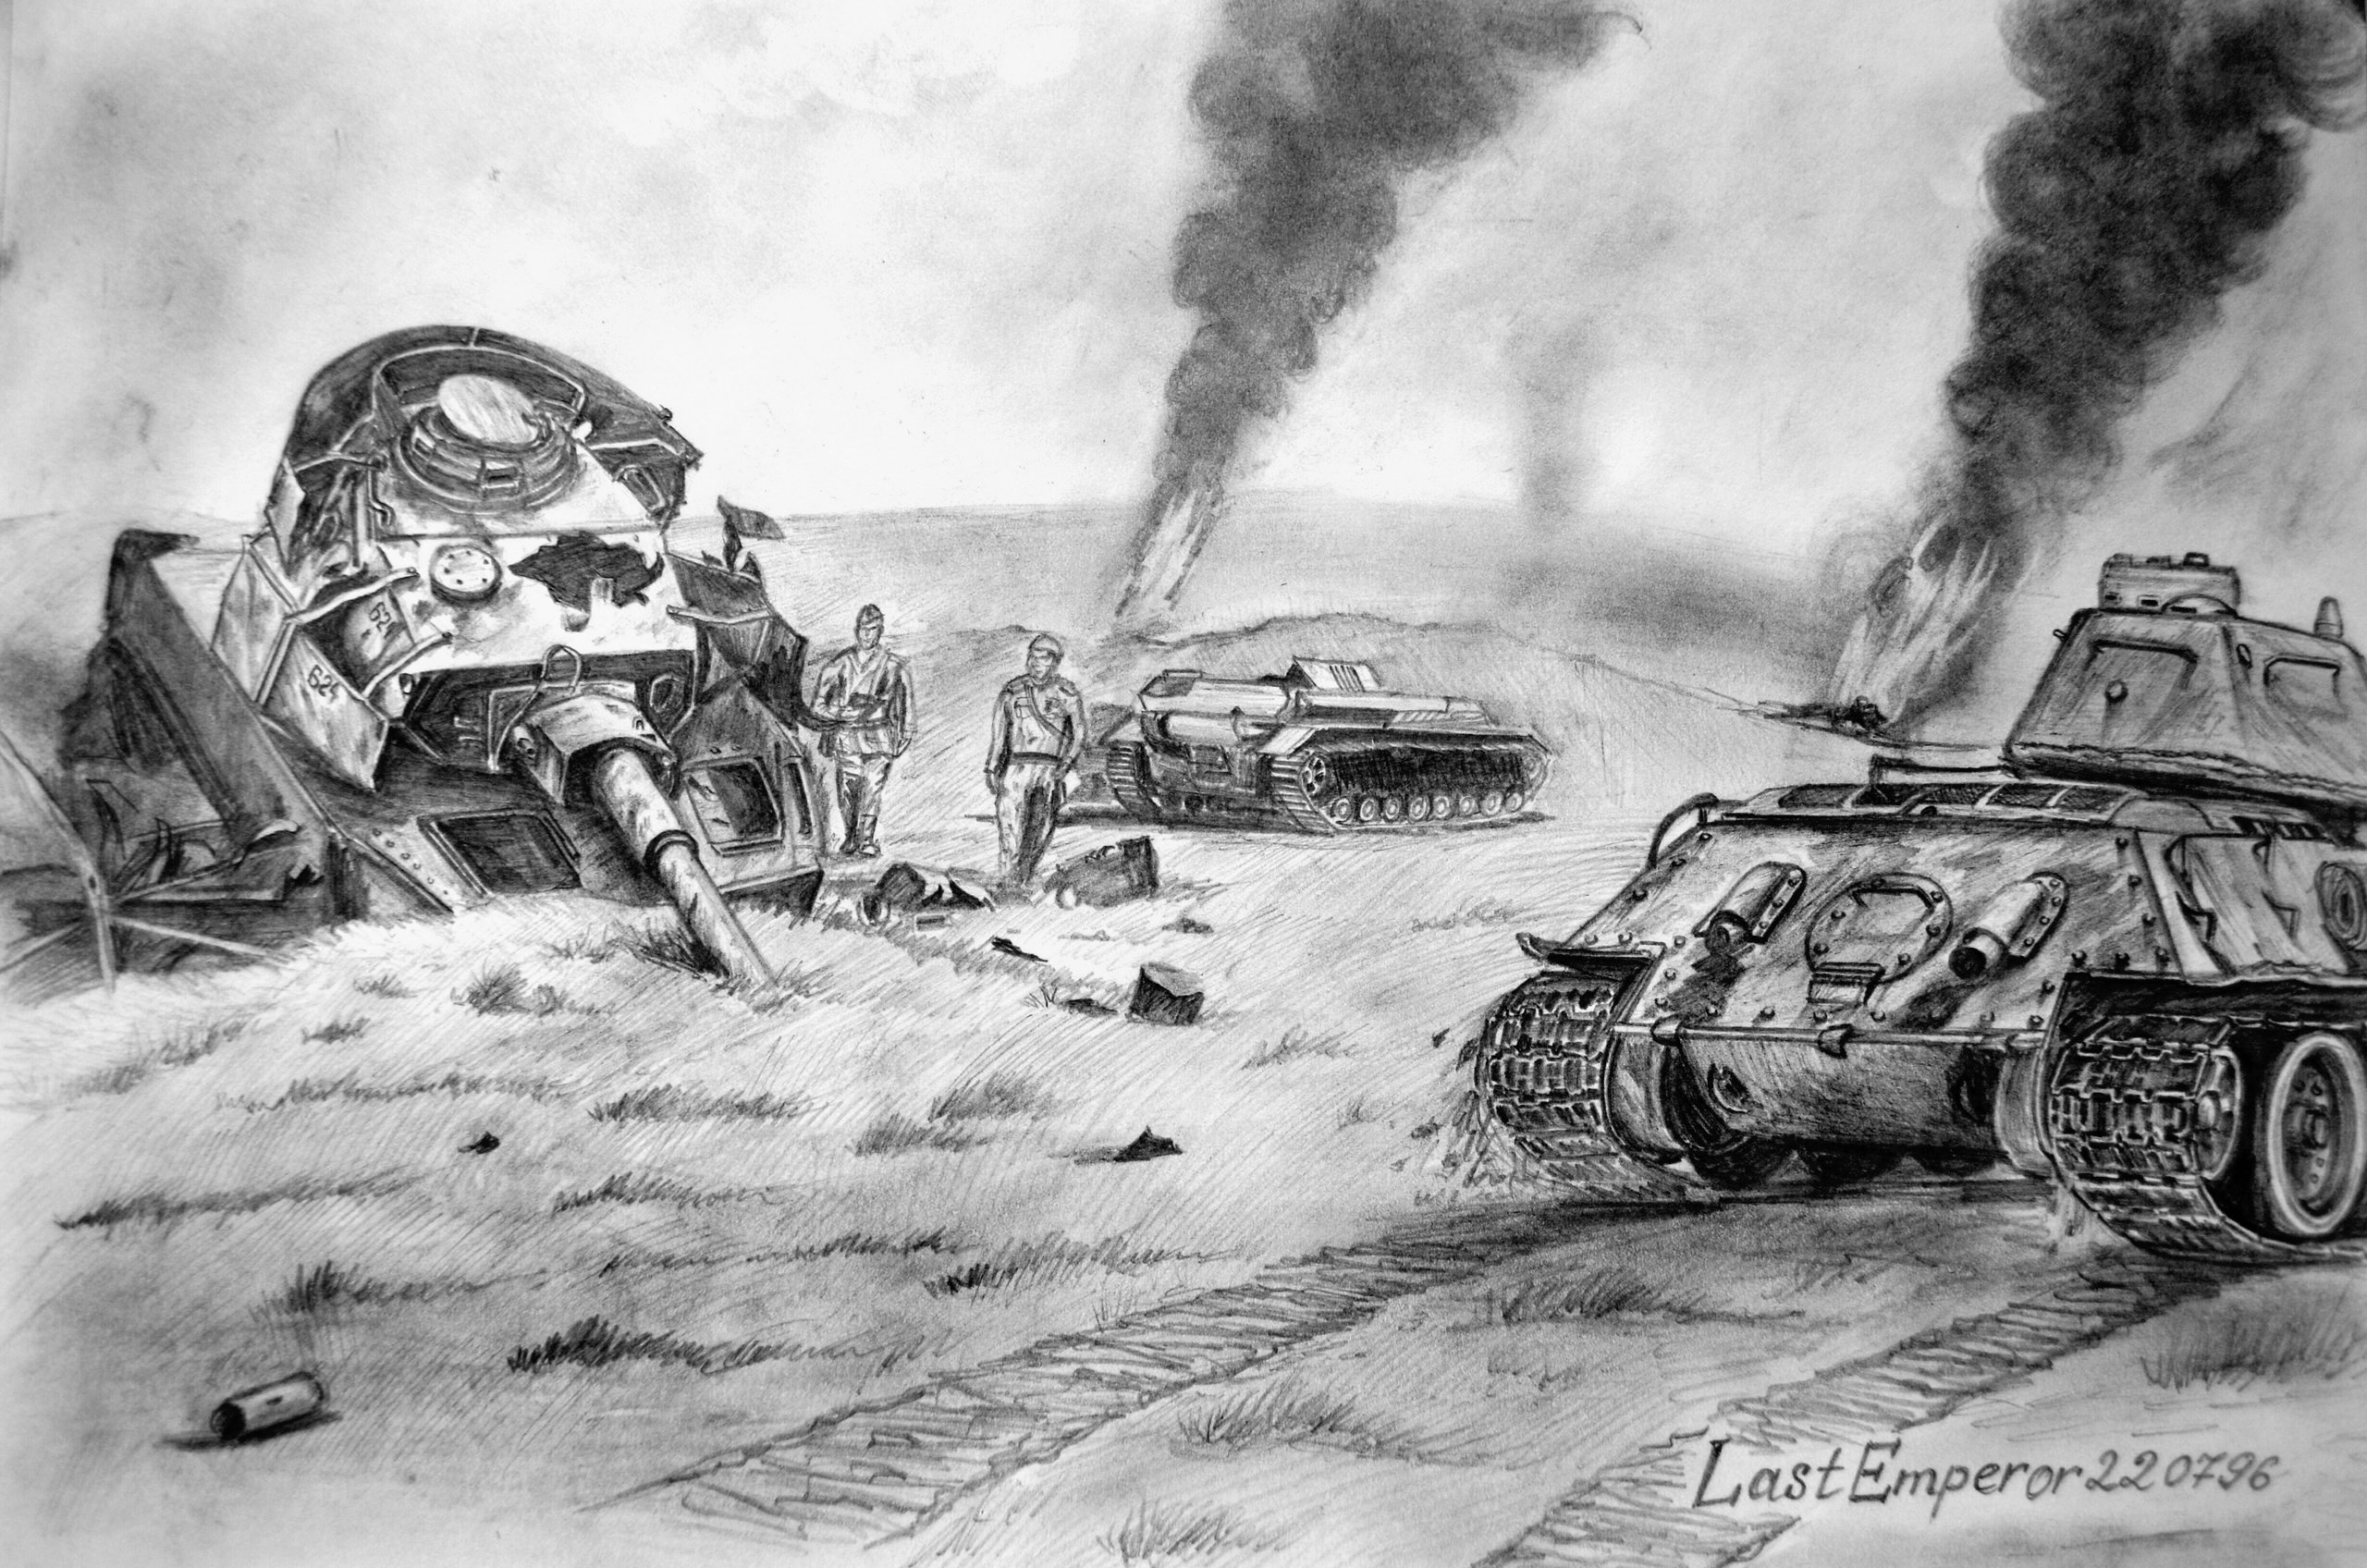 Рисунки Прохоровское танковое сражение